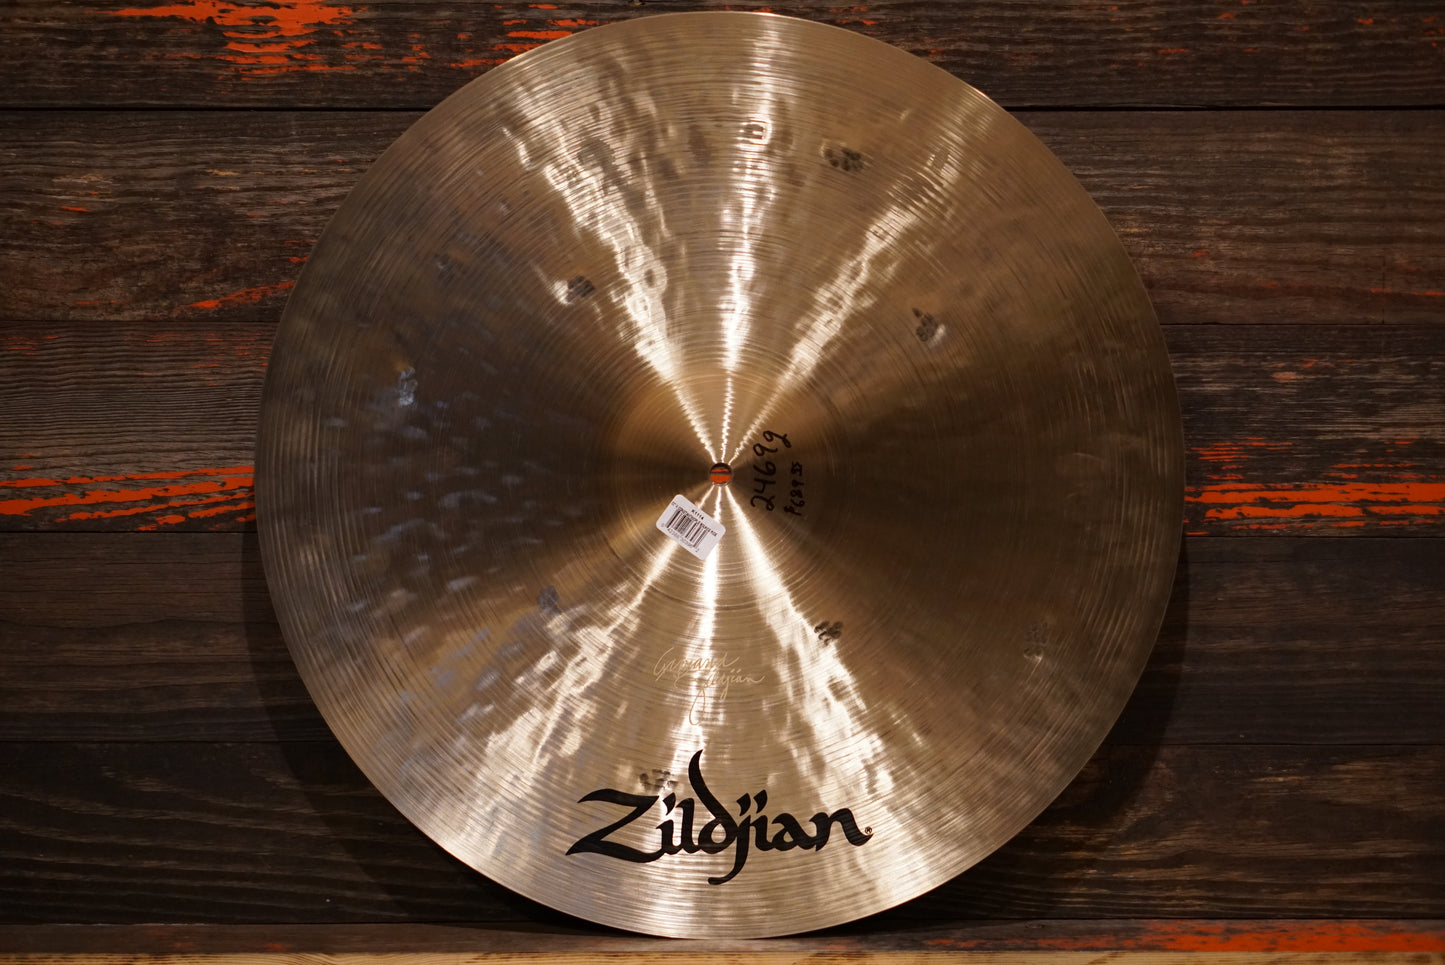 Zildjian 22" K. Constantinople Bounce Ride Cymbal - 2469g